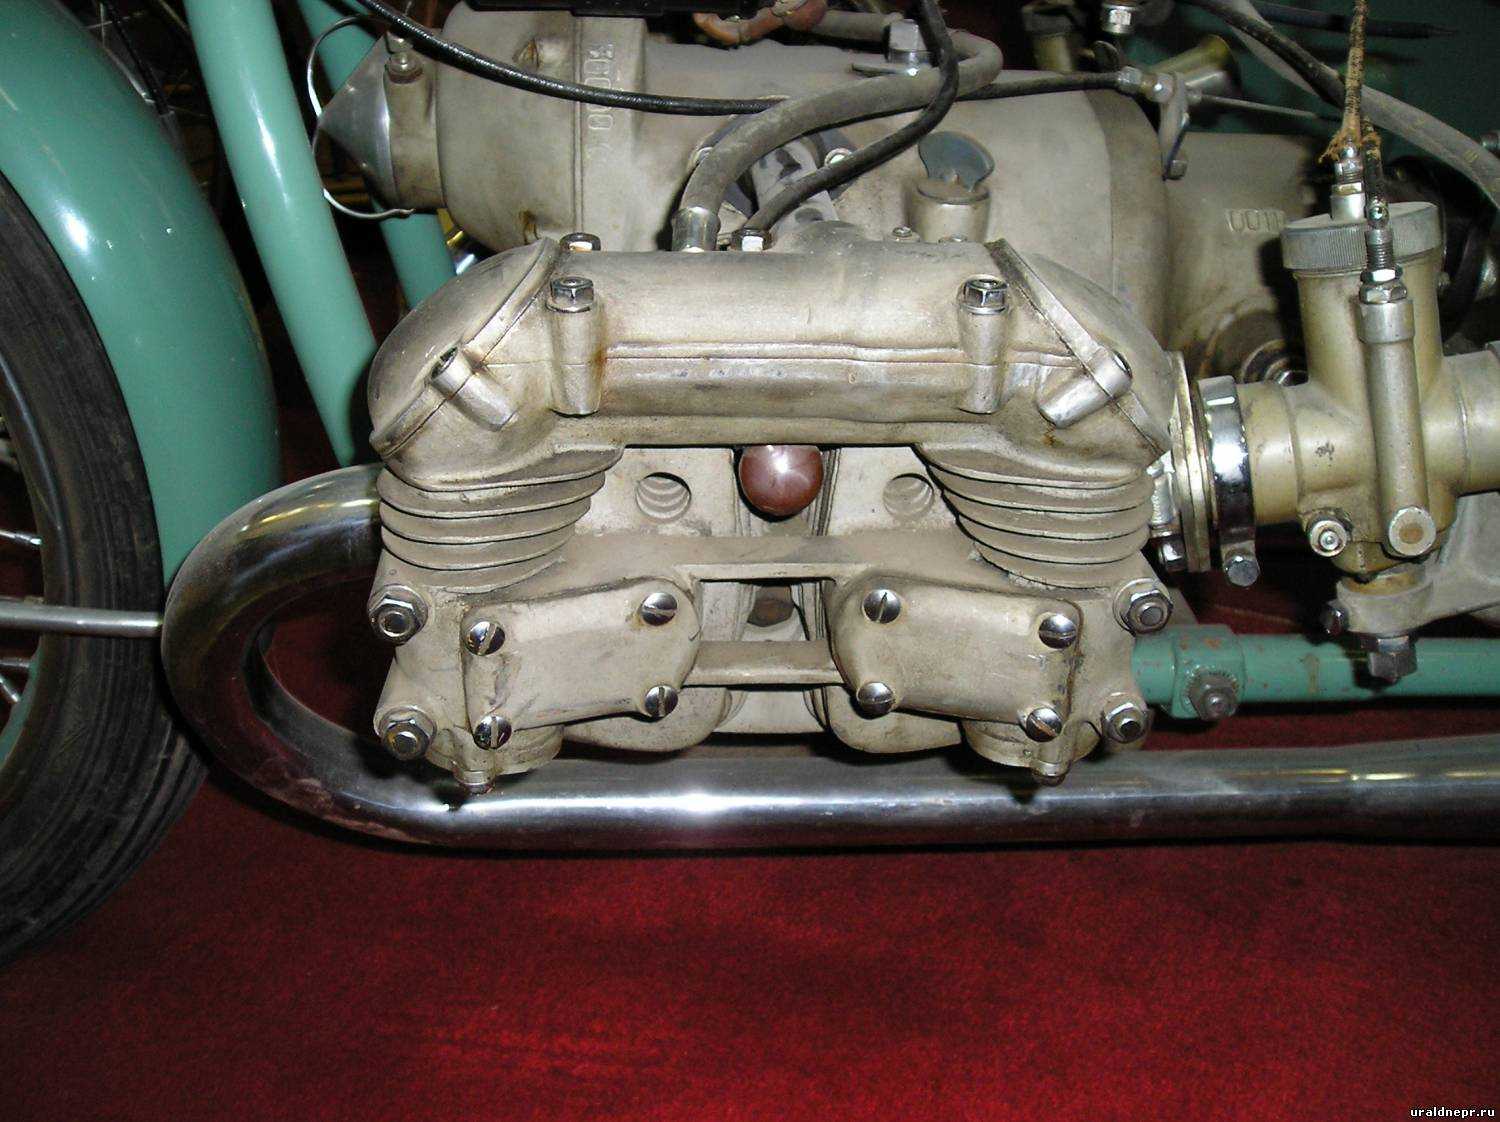 Поставил двигатель Lifan 65 лс на мотоцикл Урал расход 2 литра Решил заменить штатный мотор на мотоцикле Урал на двигатель Lifan мощностью 6,5 лс